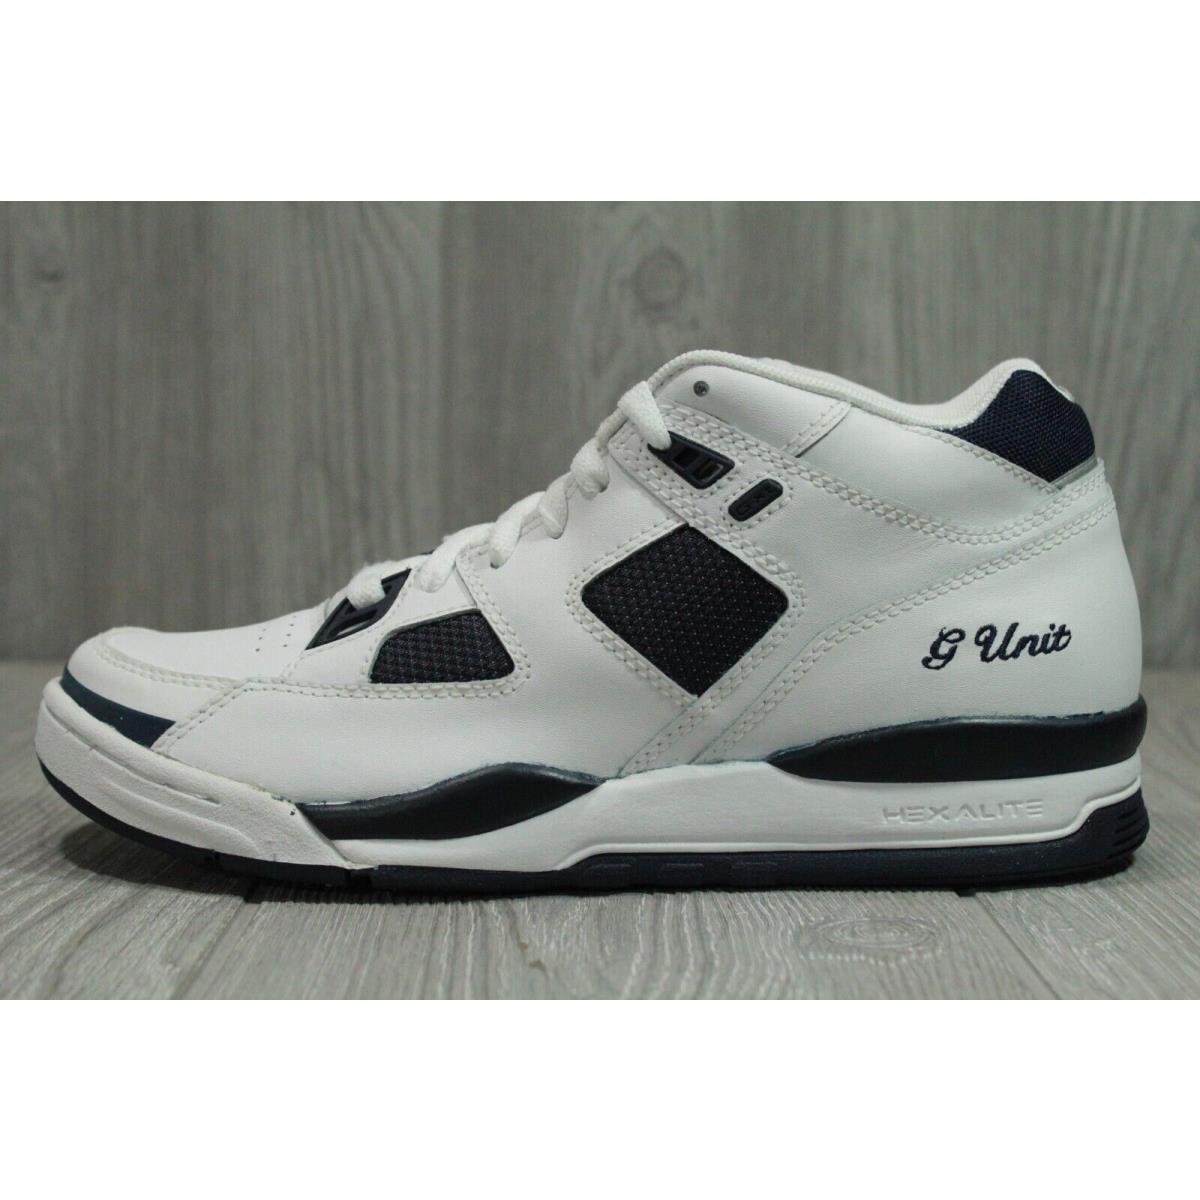 Vintage Reebok G Unit G XT White Navy Shoes 2004 Men  Wmns 7 Oss |  085311276139 - Reebok shoes - White | SporTipTop